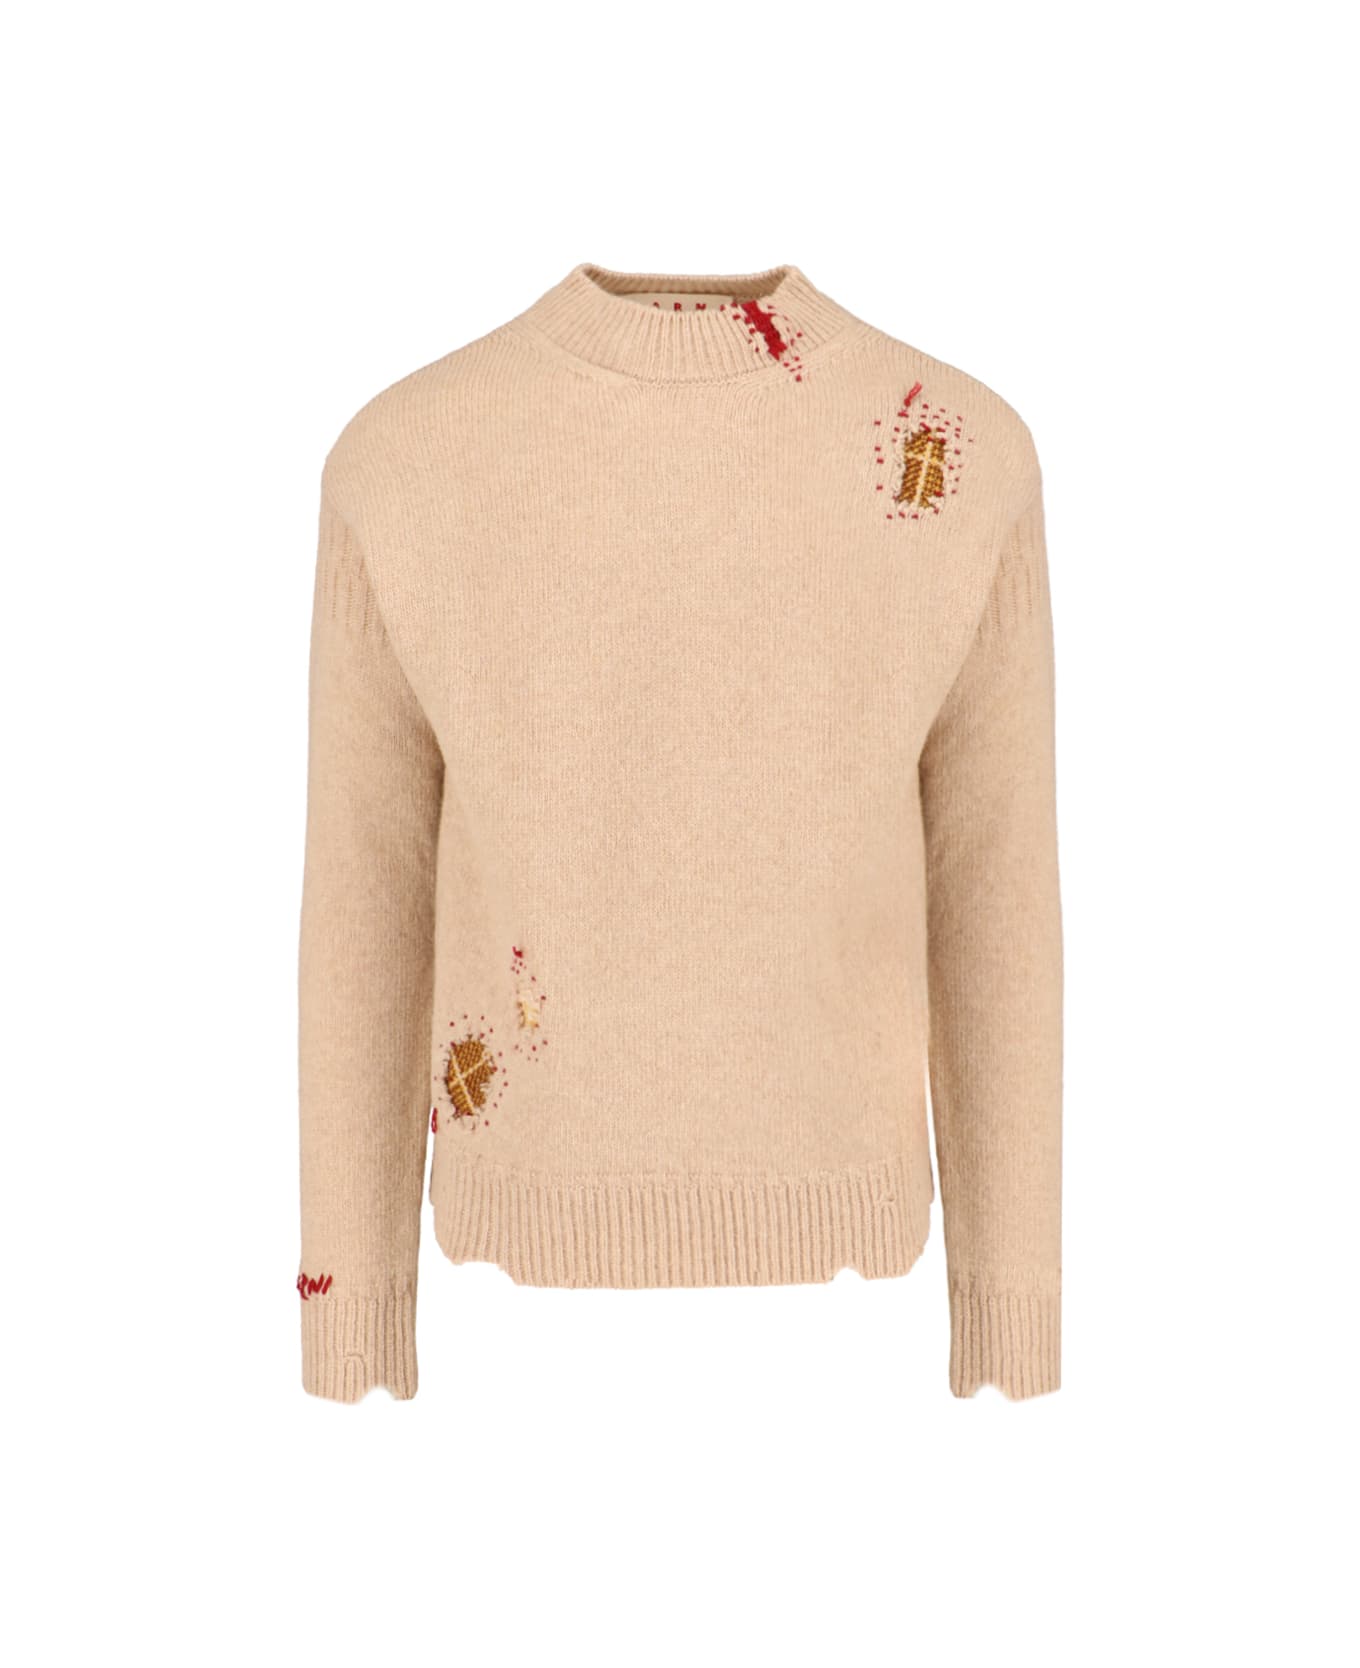 Marni Wool Sweater - Beige